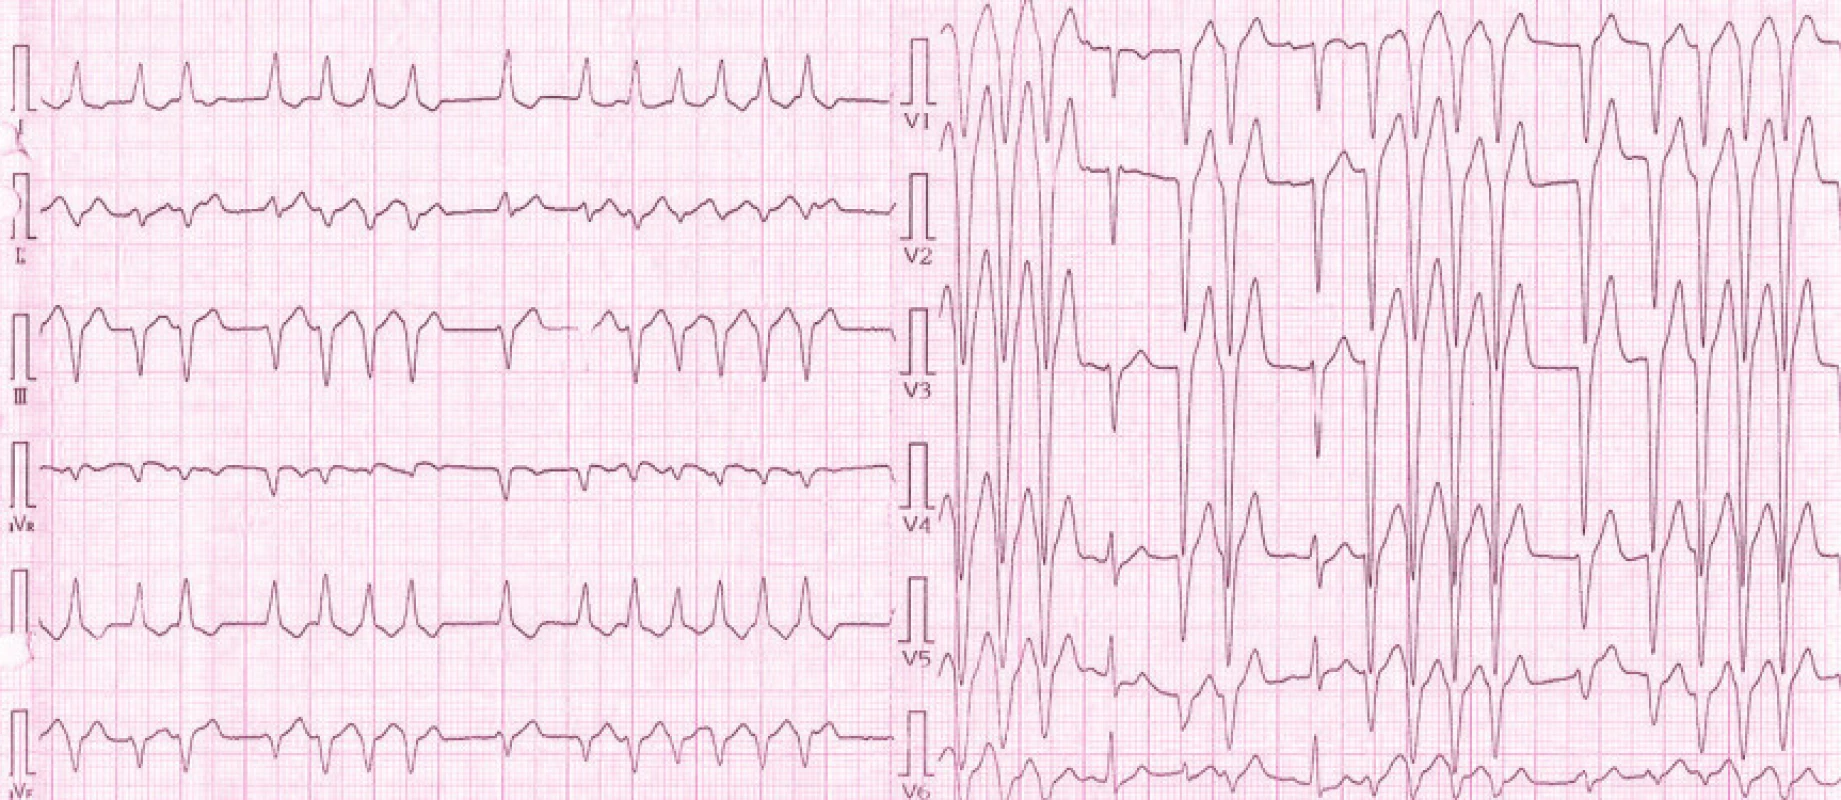 EKG pacientky při přijetí na Interní kardiologickou kliniku: na záznamu přítomny pouze 2 sinusové komplexy (PQ 0,14 ms, QRS 0,10 ms), převažují salvy monomorfních extrasystol se širokým QRS komplexem (QRS 120 ms) s inferiorní osou a negativní konkordancí v hrudních svodech, což s největší pravděpodobností svědčí o komorovém původu extrasystol.